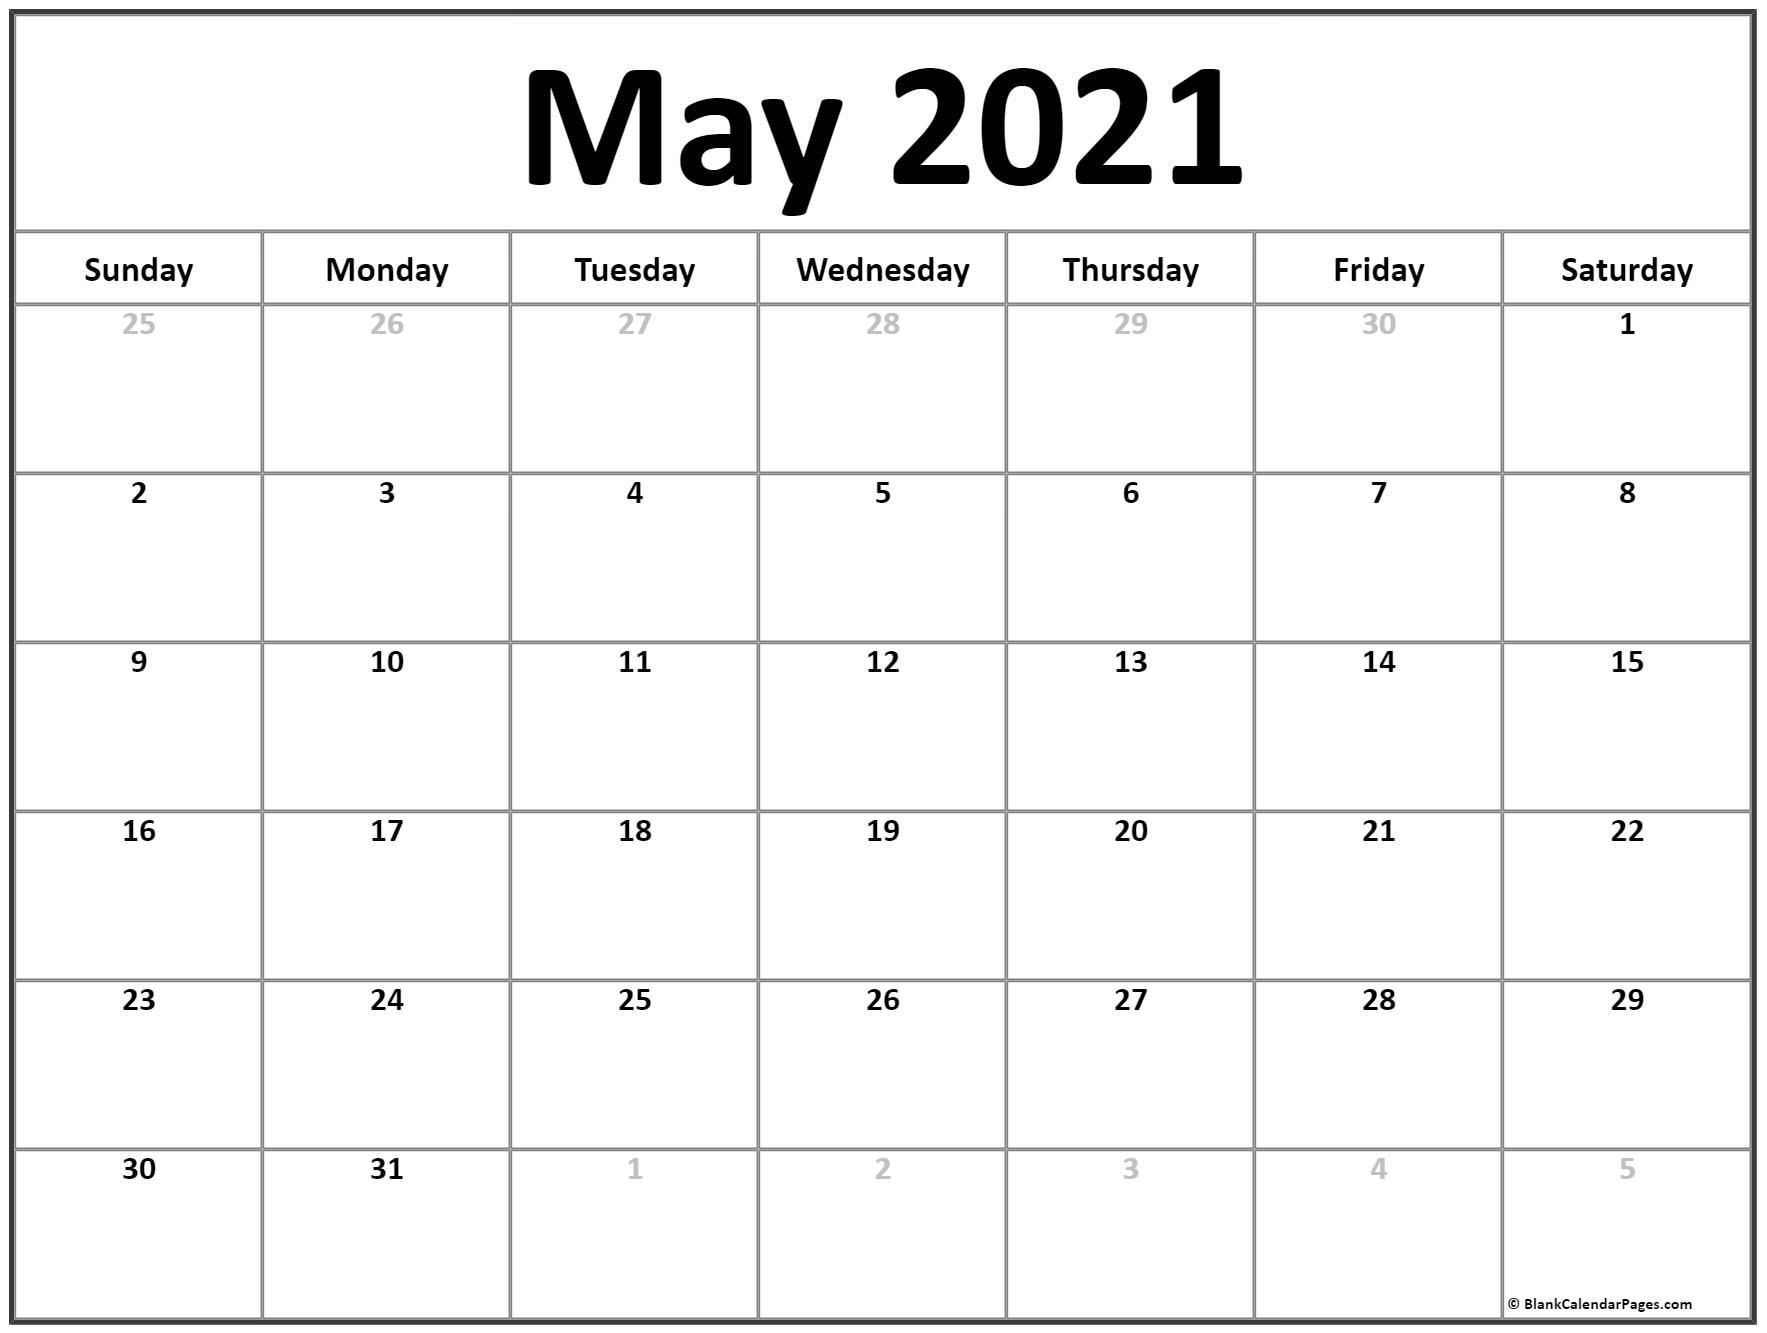 May 2021 calendar